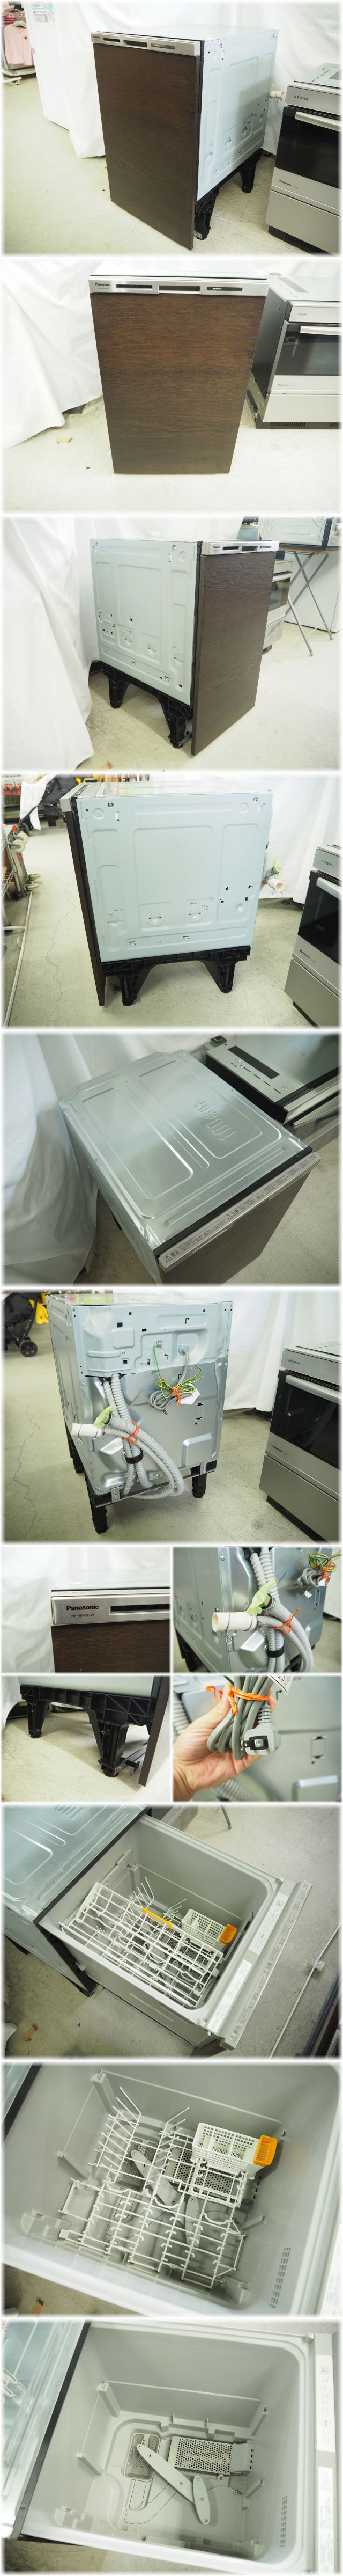 特価国産Panasonic ビルトイン食器洗い乾燥機 NP-45MD7W 6人分 2017年製 食器洗い乾燥機